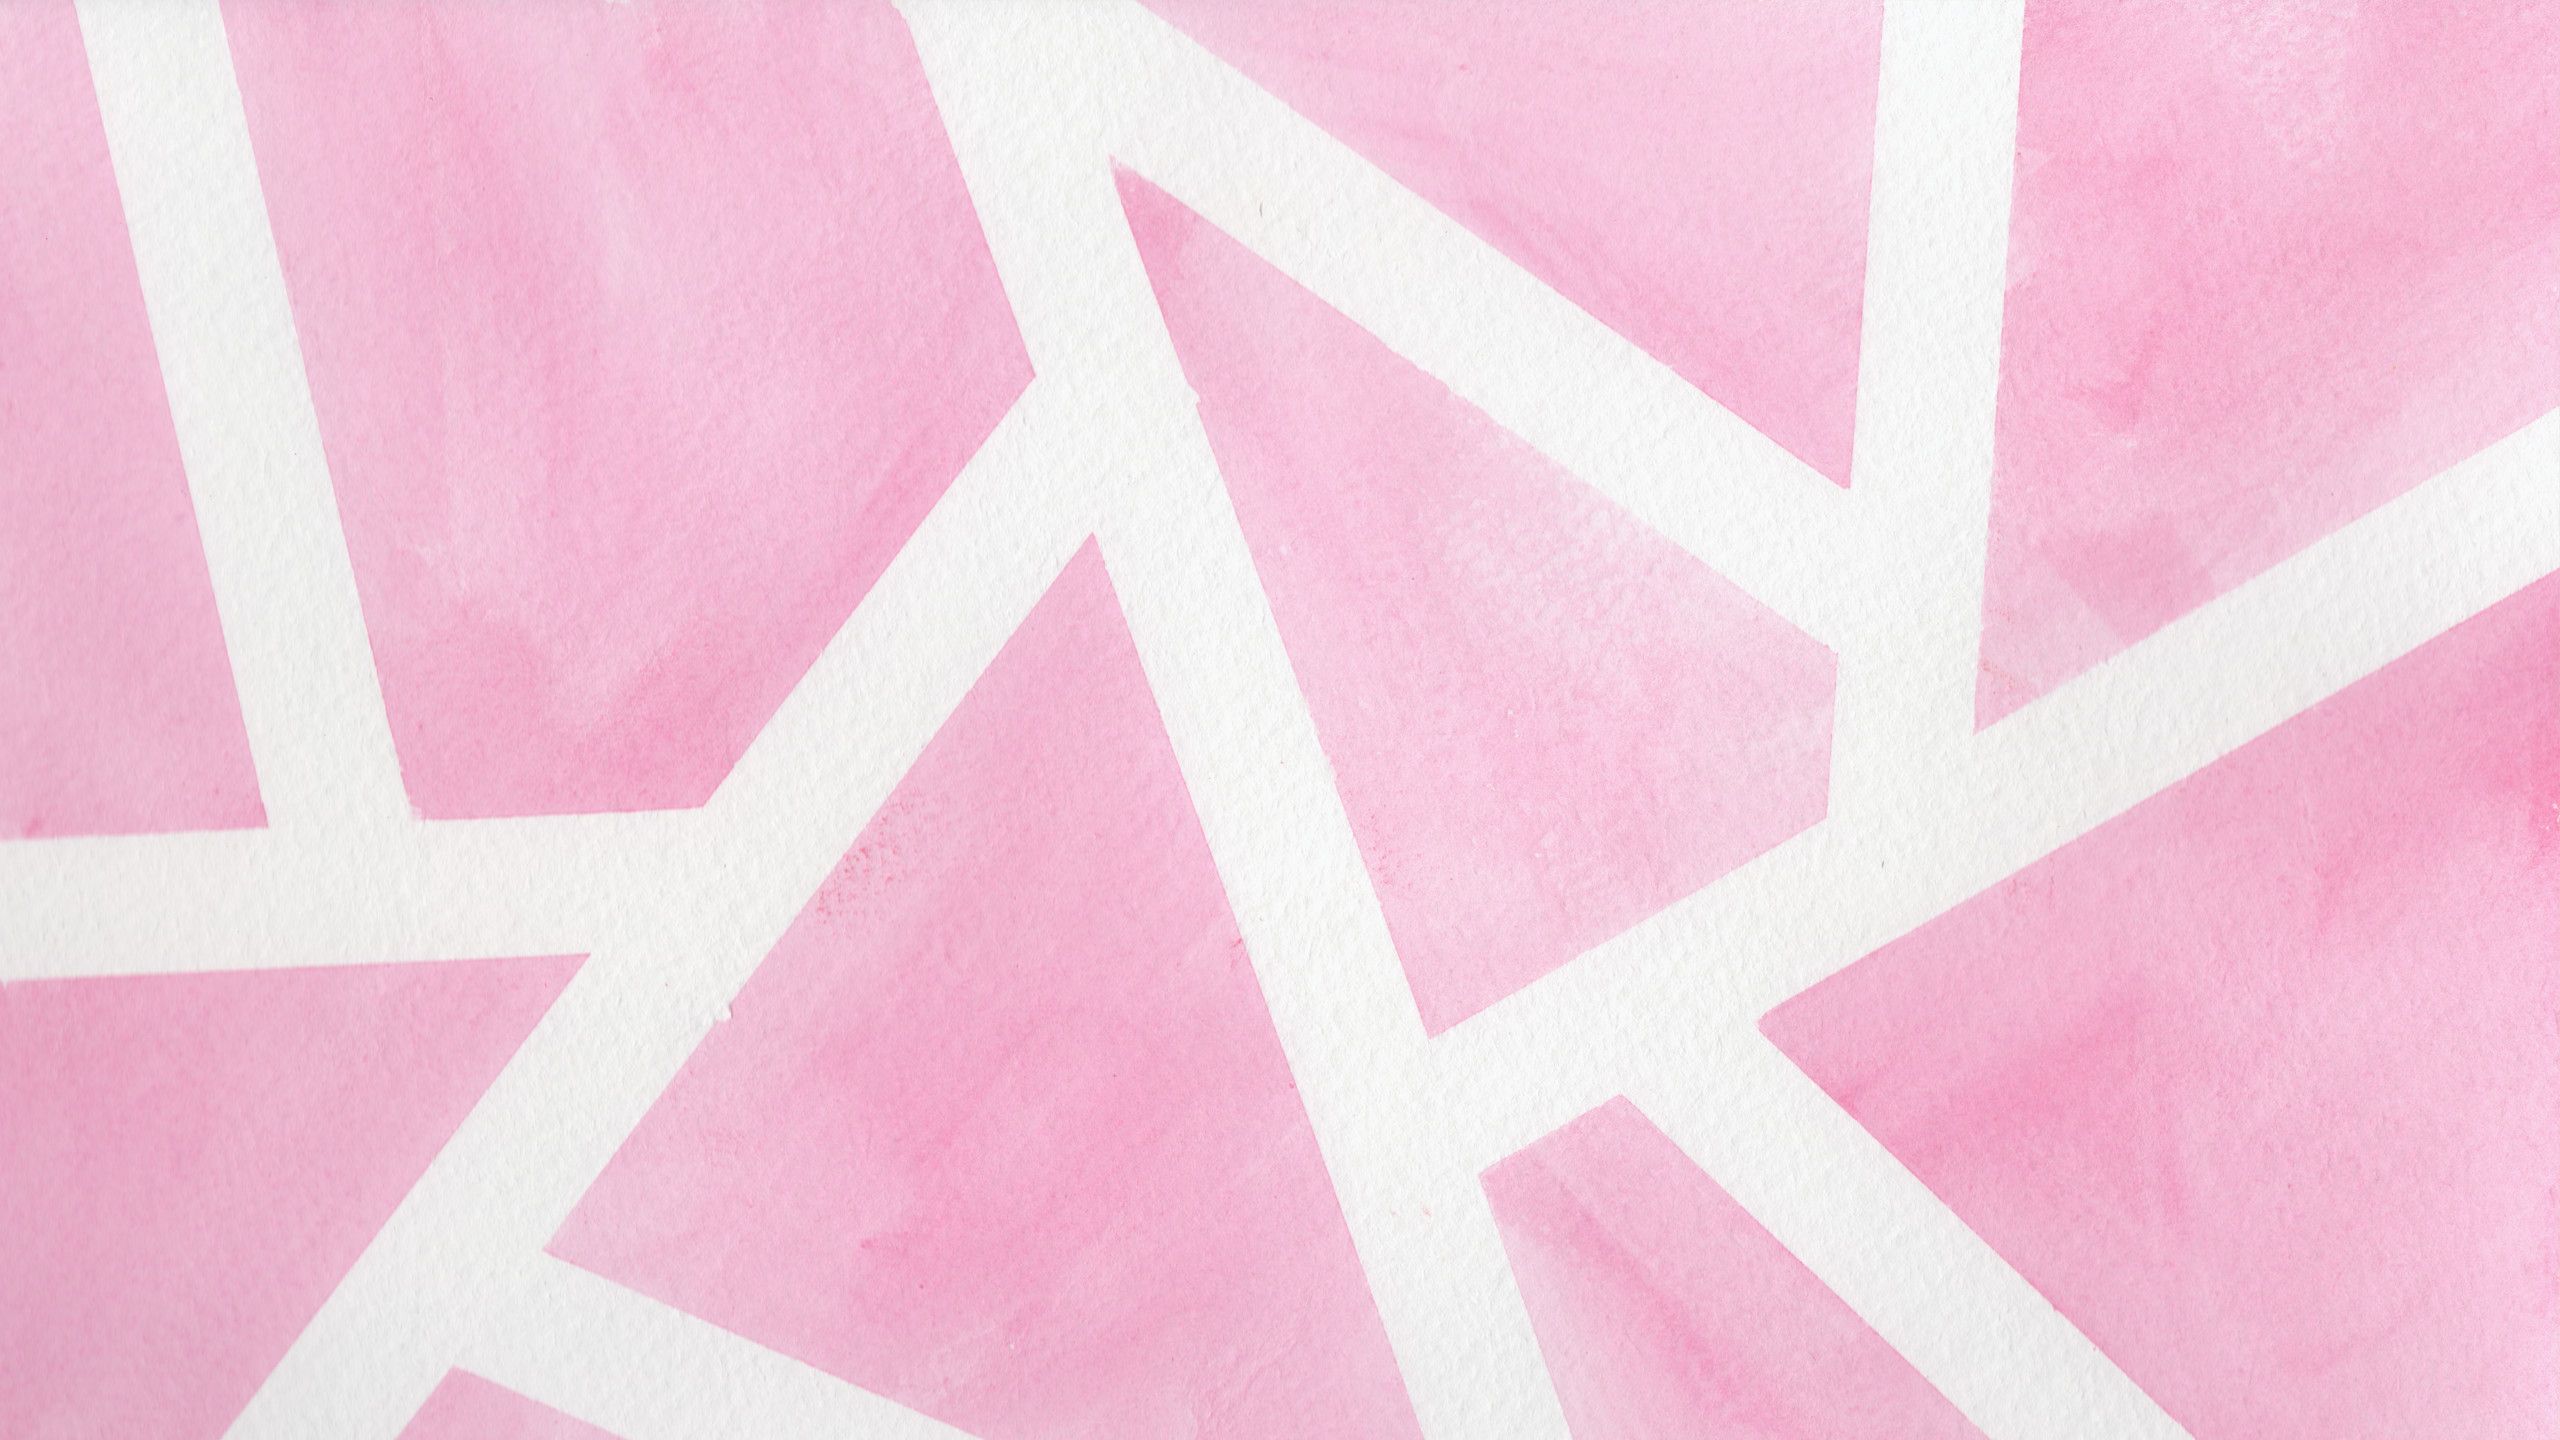 Pastel Pink Aesthetic Laptop Wallpapers On Wallpaperdog